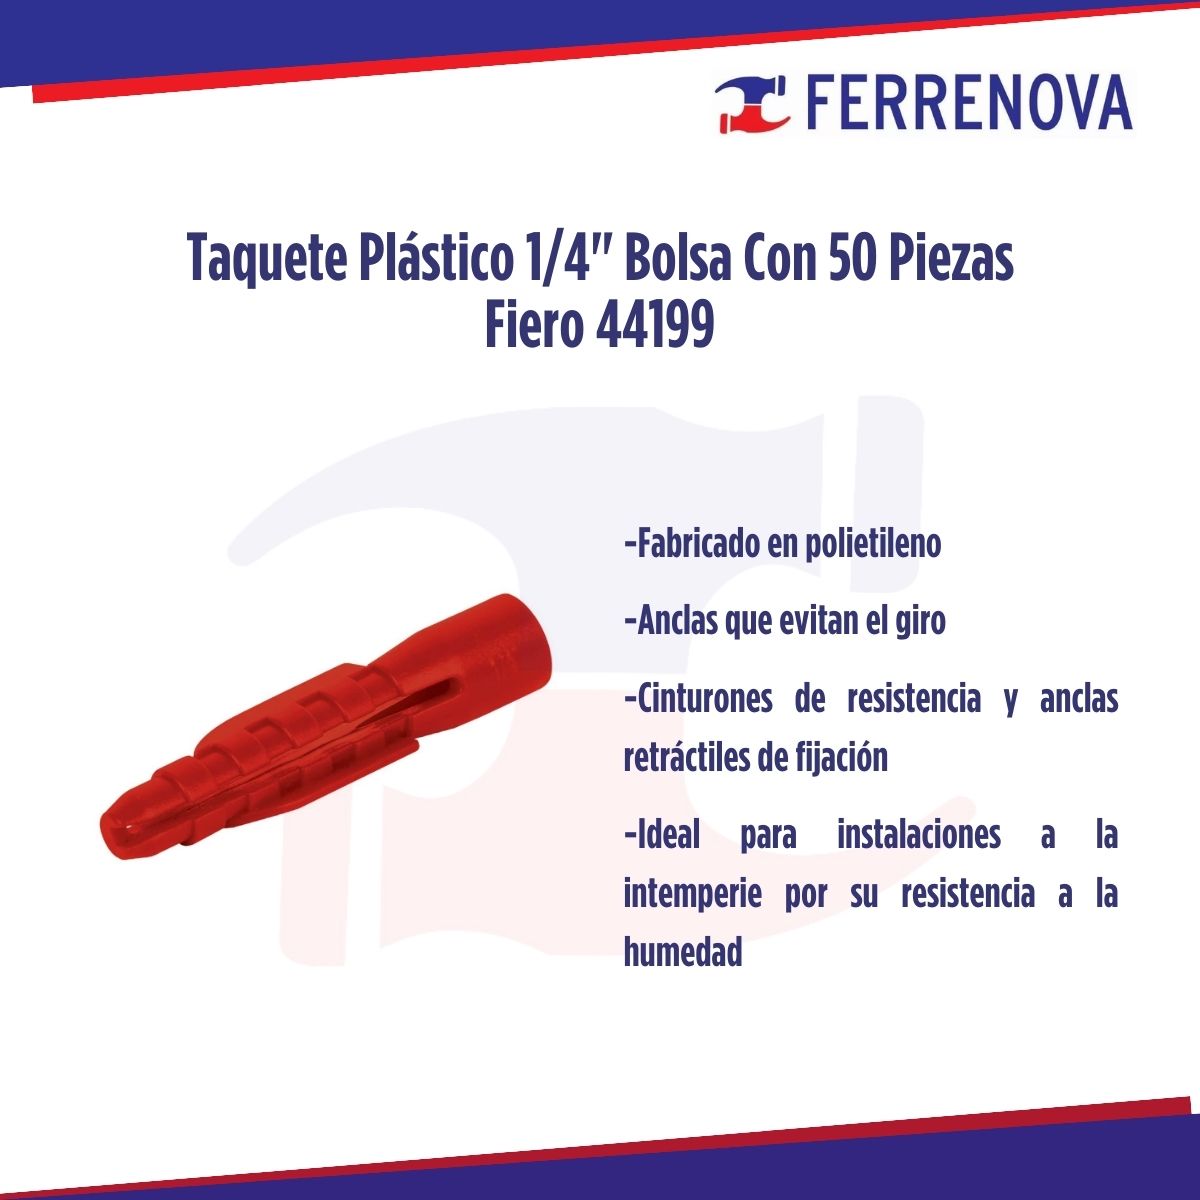 Taquete De Plástico 1/4" Bolsa Con 50 Piezas Fiero 44199